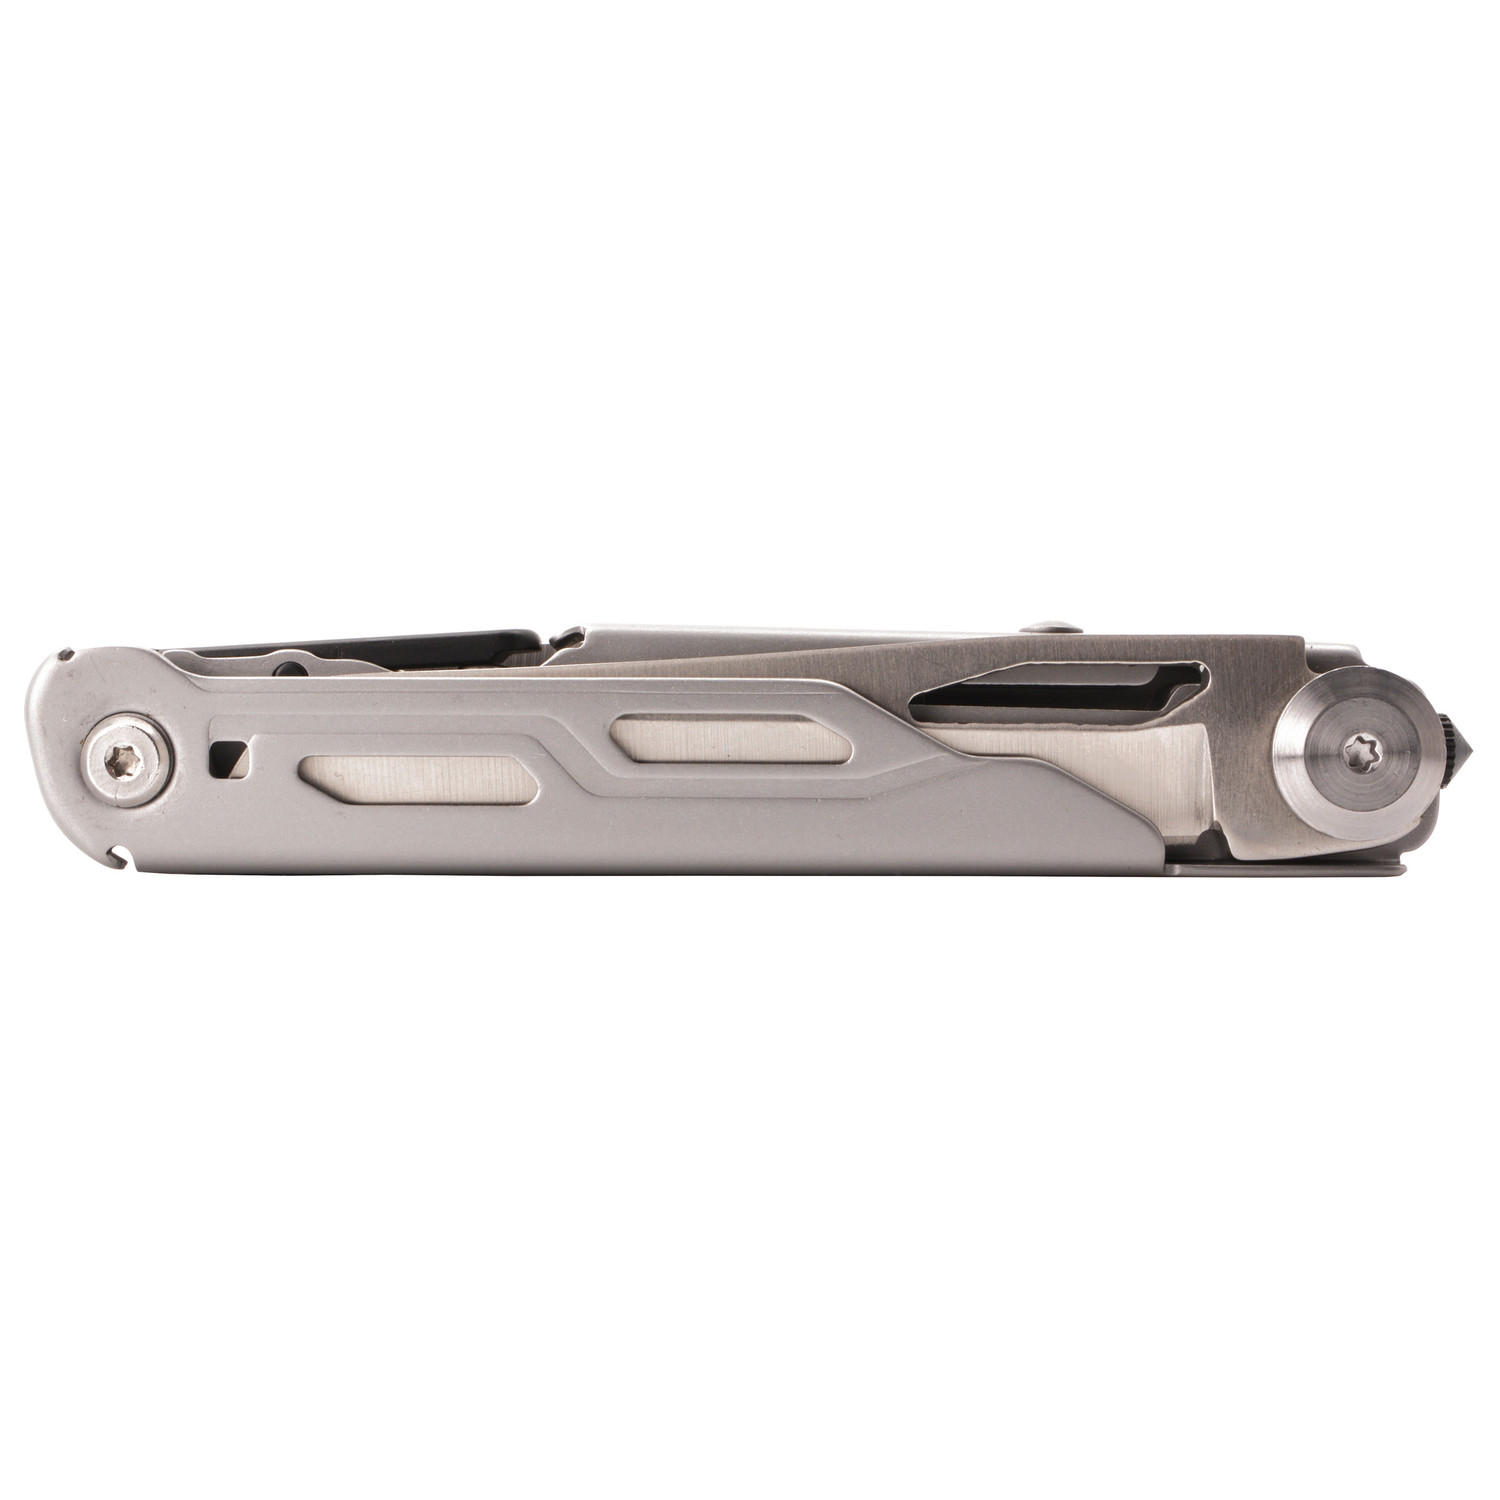 KH-Security Multimesser: Schere, Messer, Schraubendreher, Flaschenffner und Glasbrecher